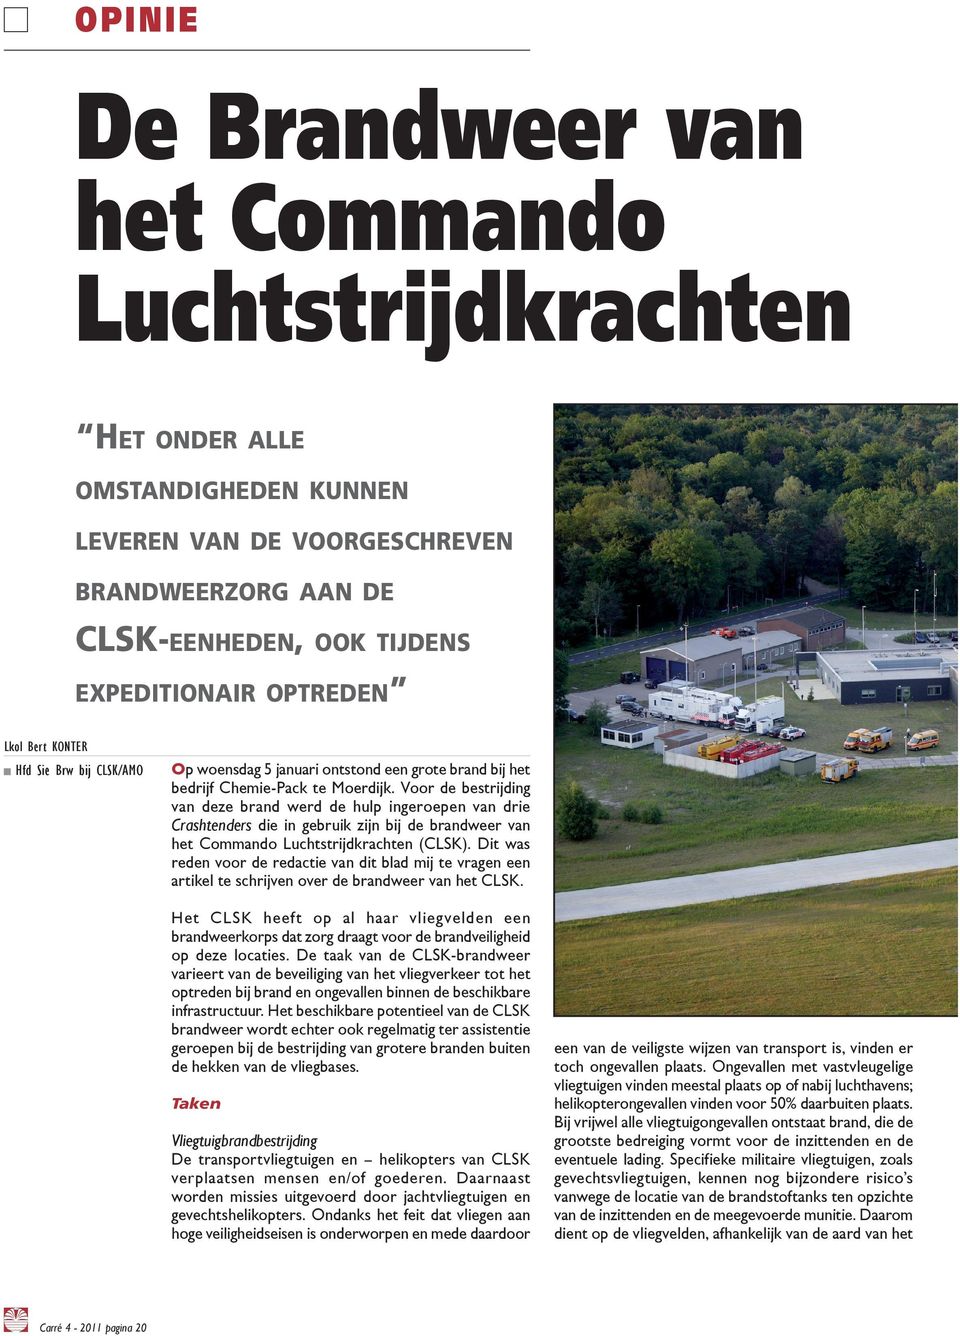 Voor de bestrijding van deze brand werd de hulp ingeroepen van drie Crashtenders die in gebruik zijn bij de brandweer van het Commando Luchtstrijdkrachten (CLSK).